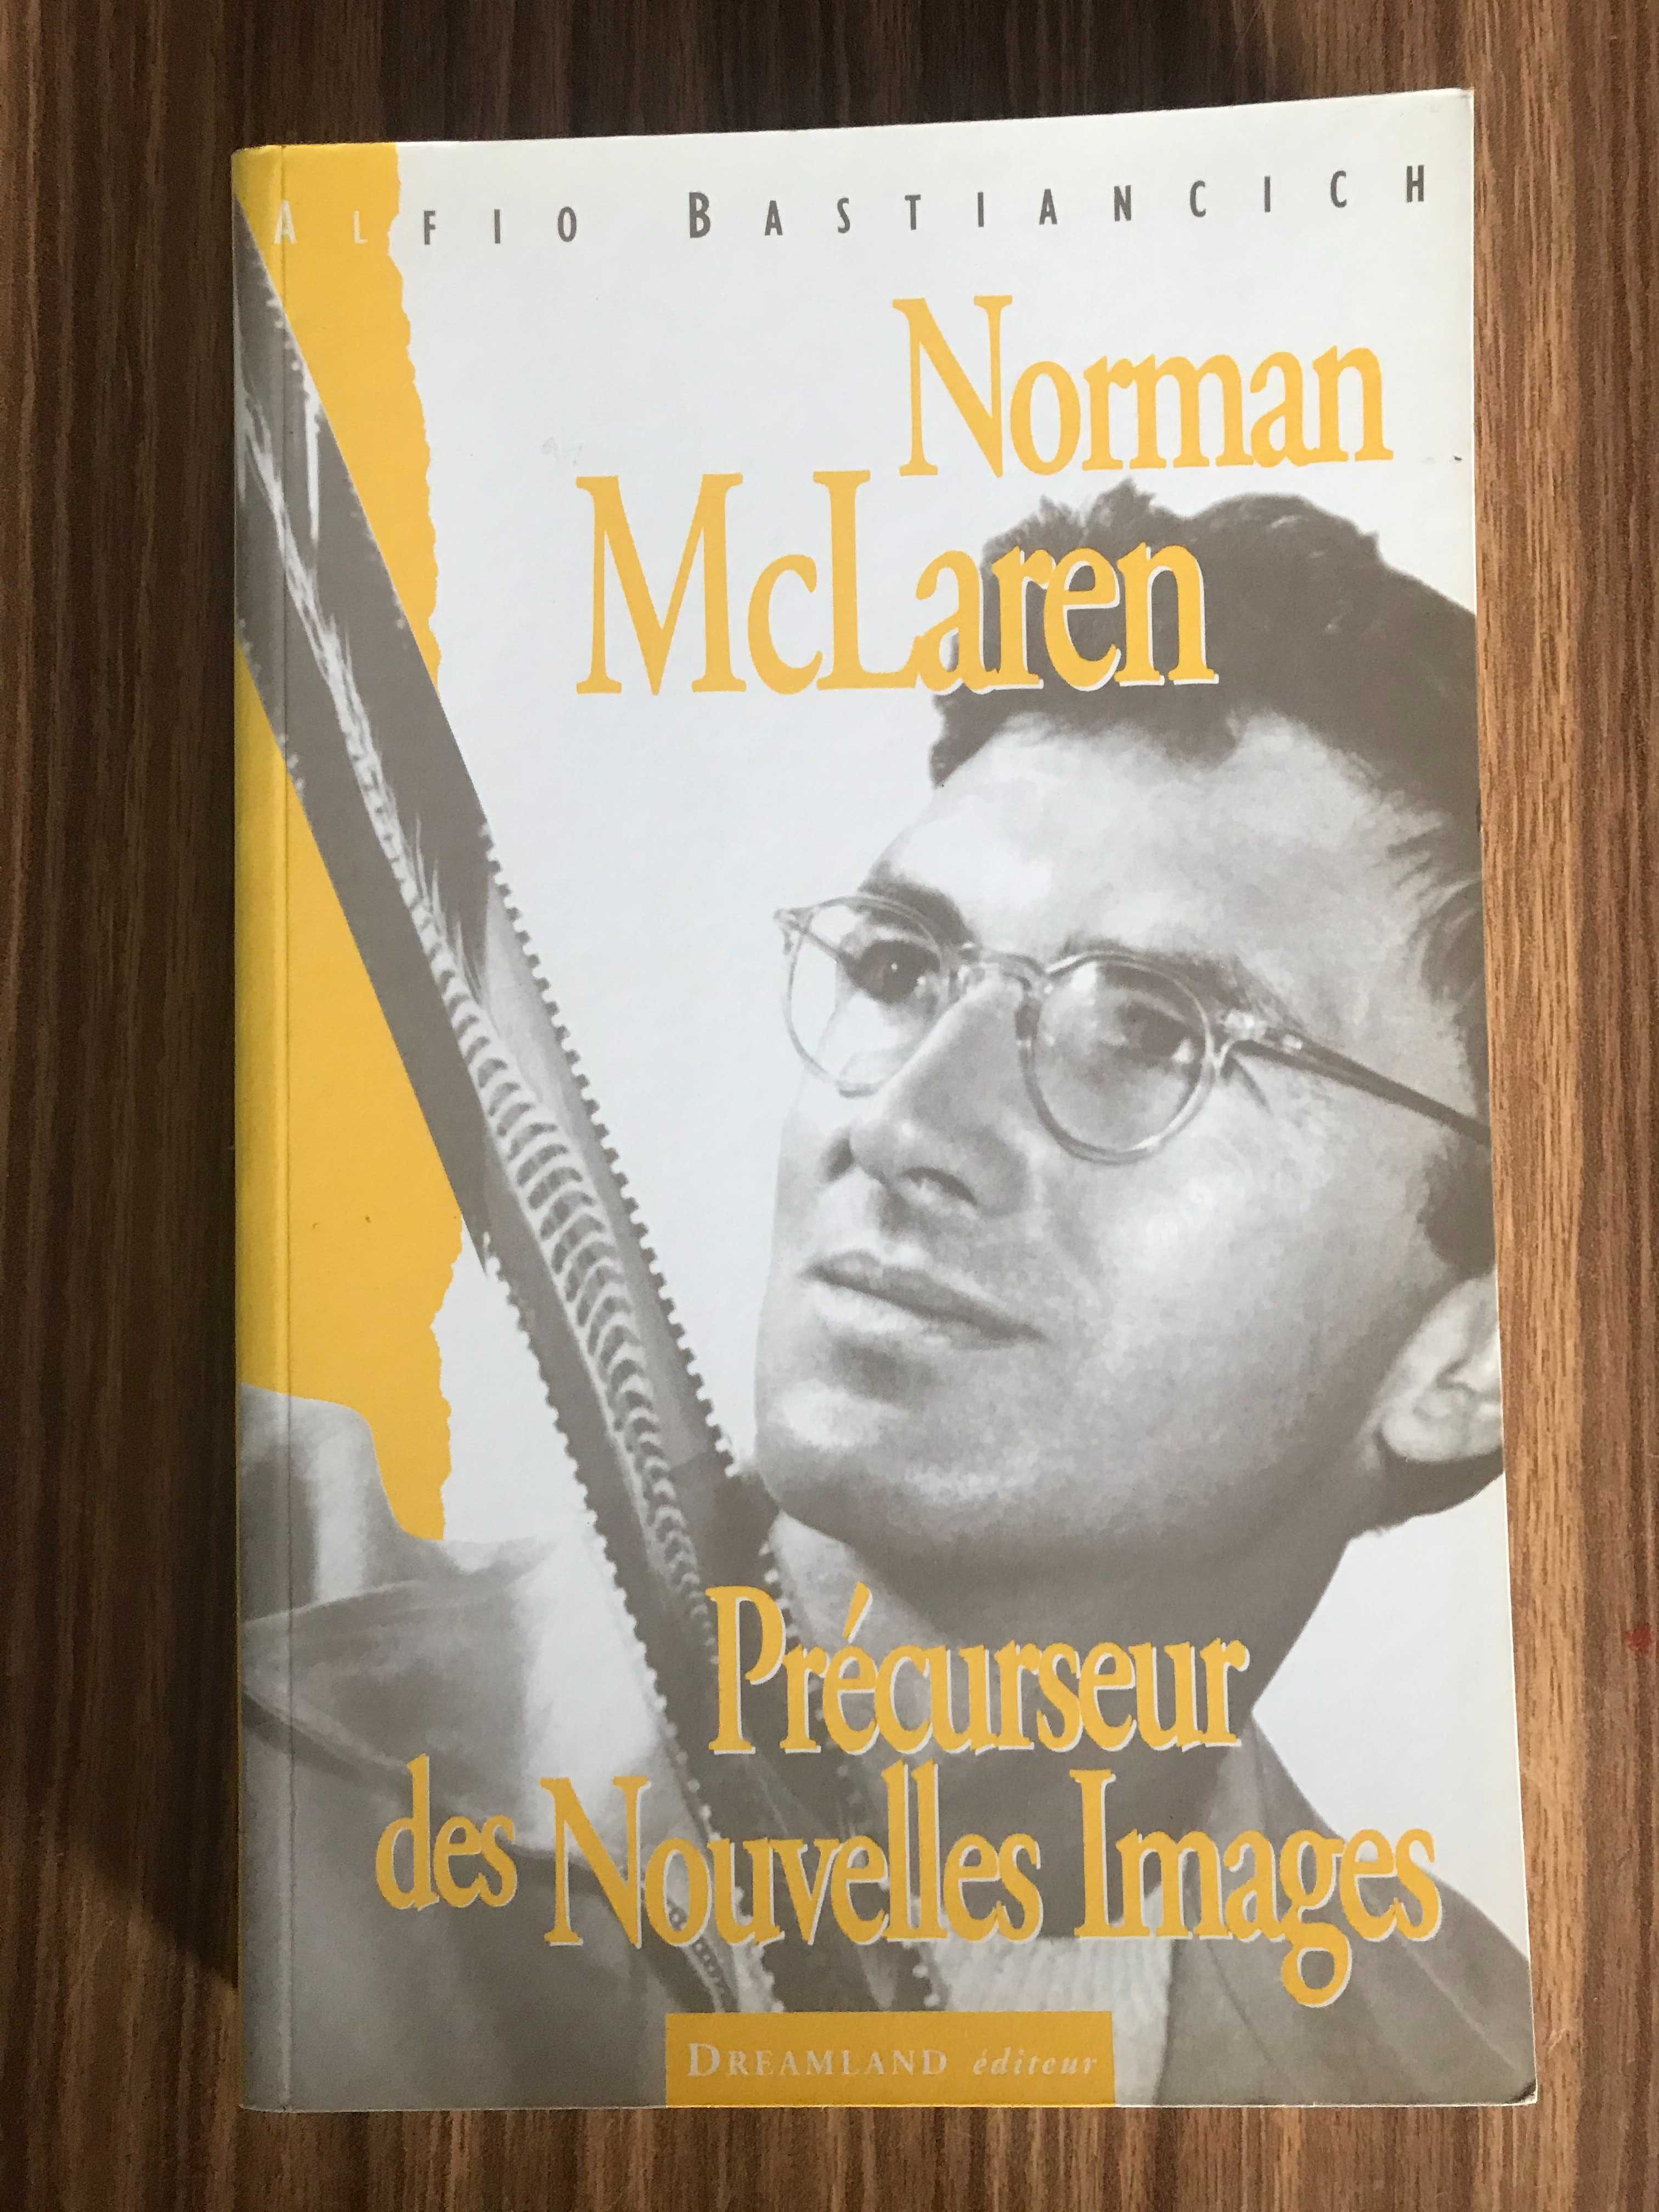 Biografia de Norman McLaren (cinema de animação)